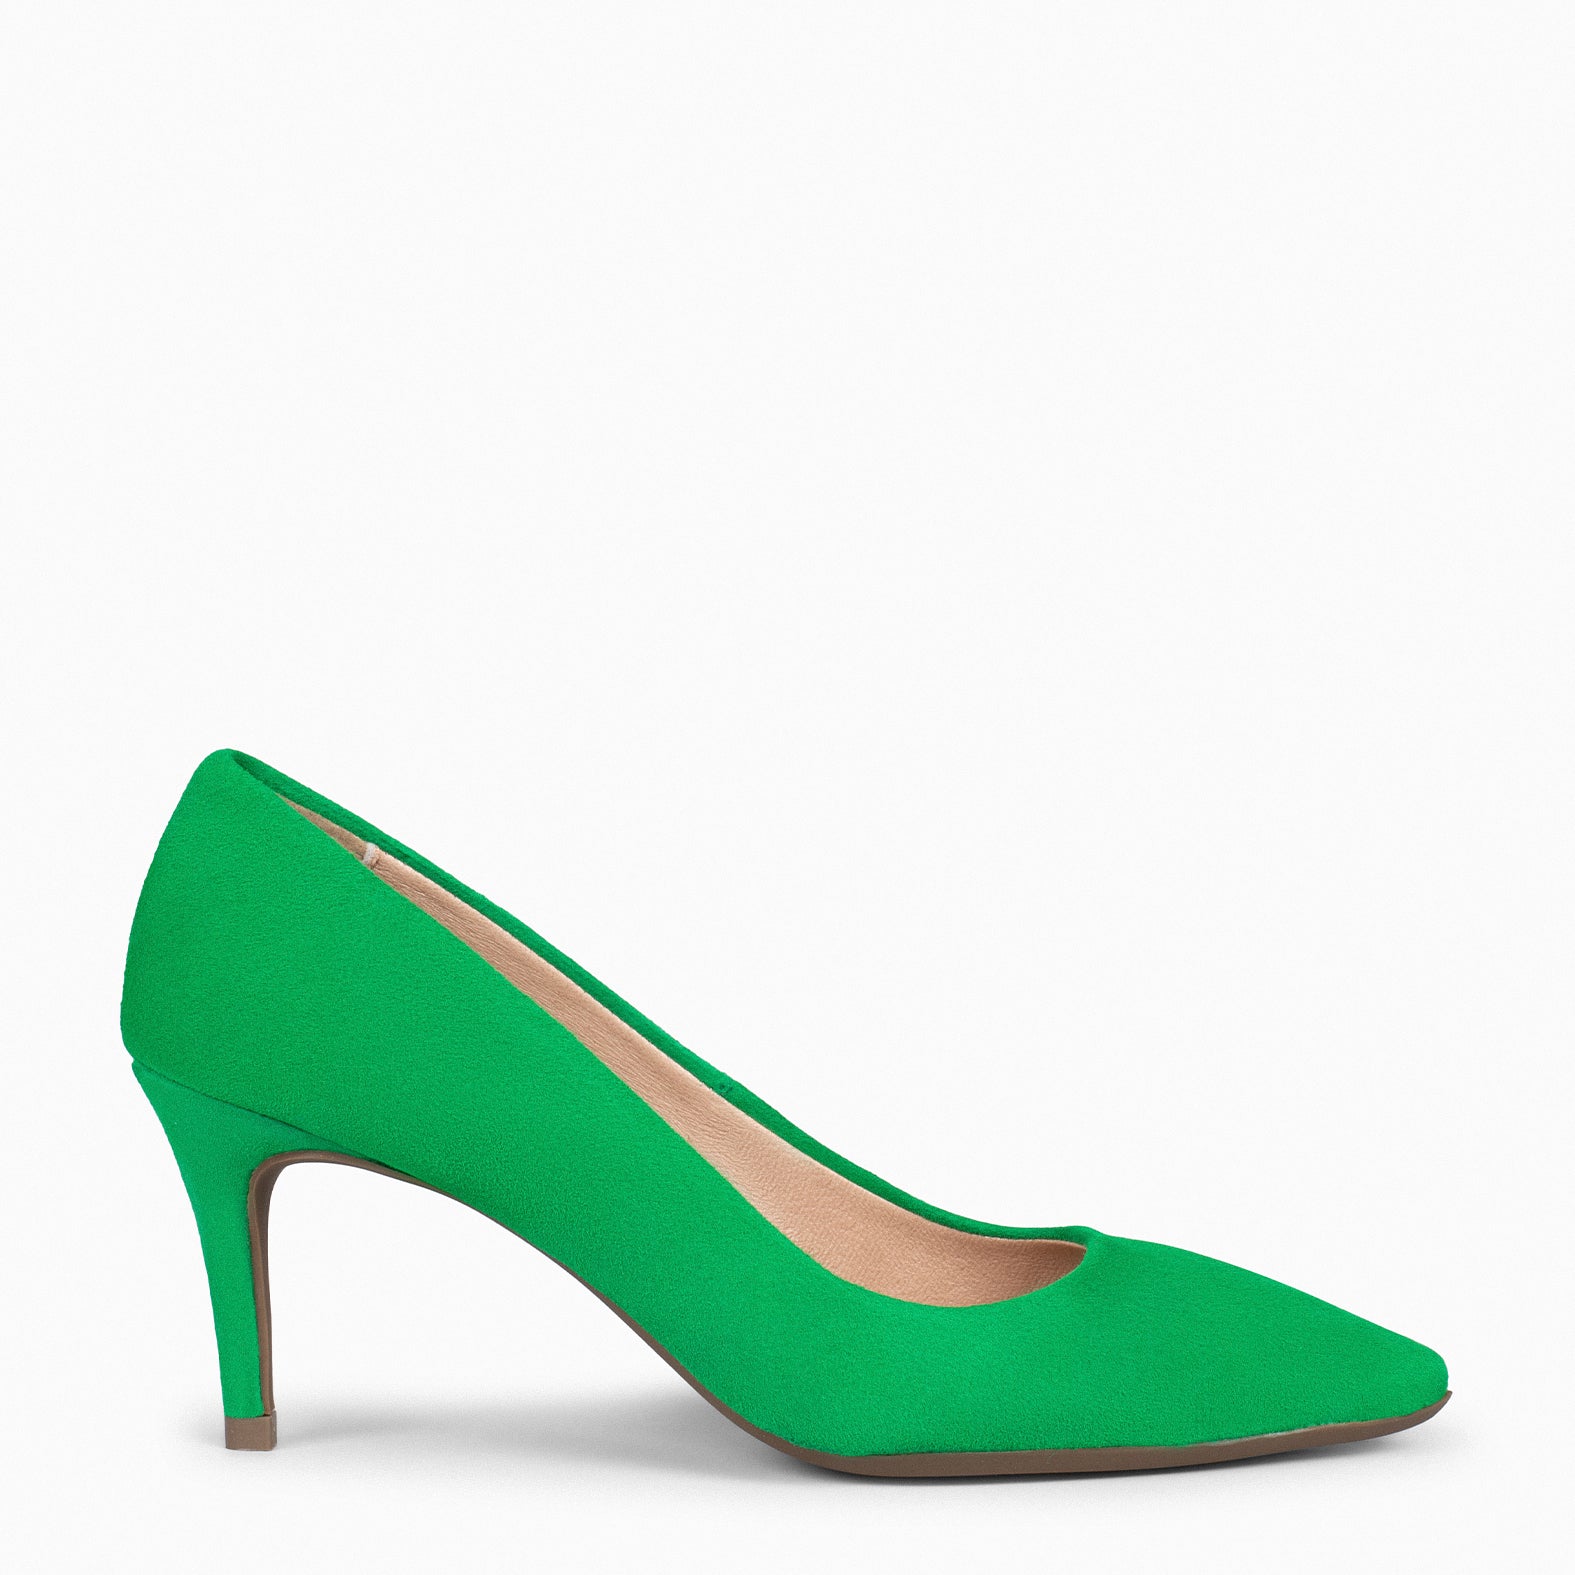 STILETTO – GREEN suede leather stilettos